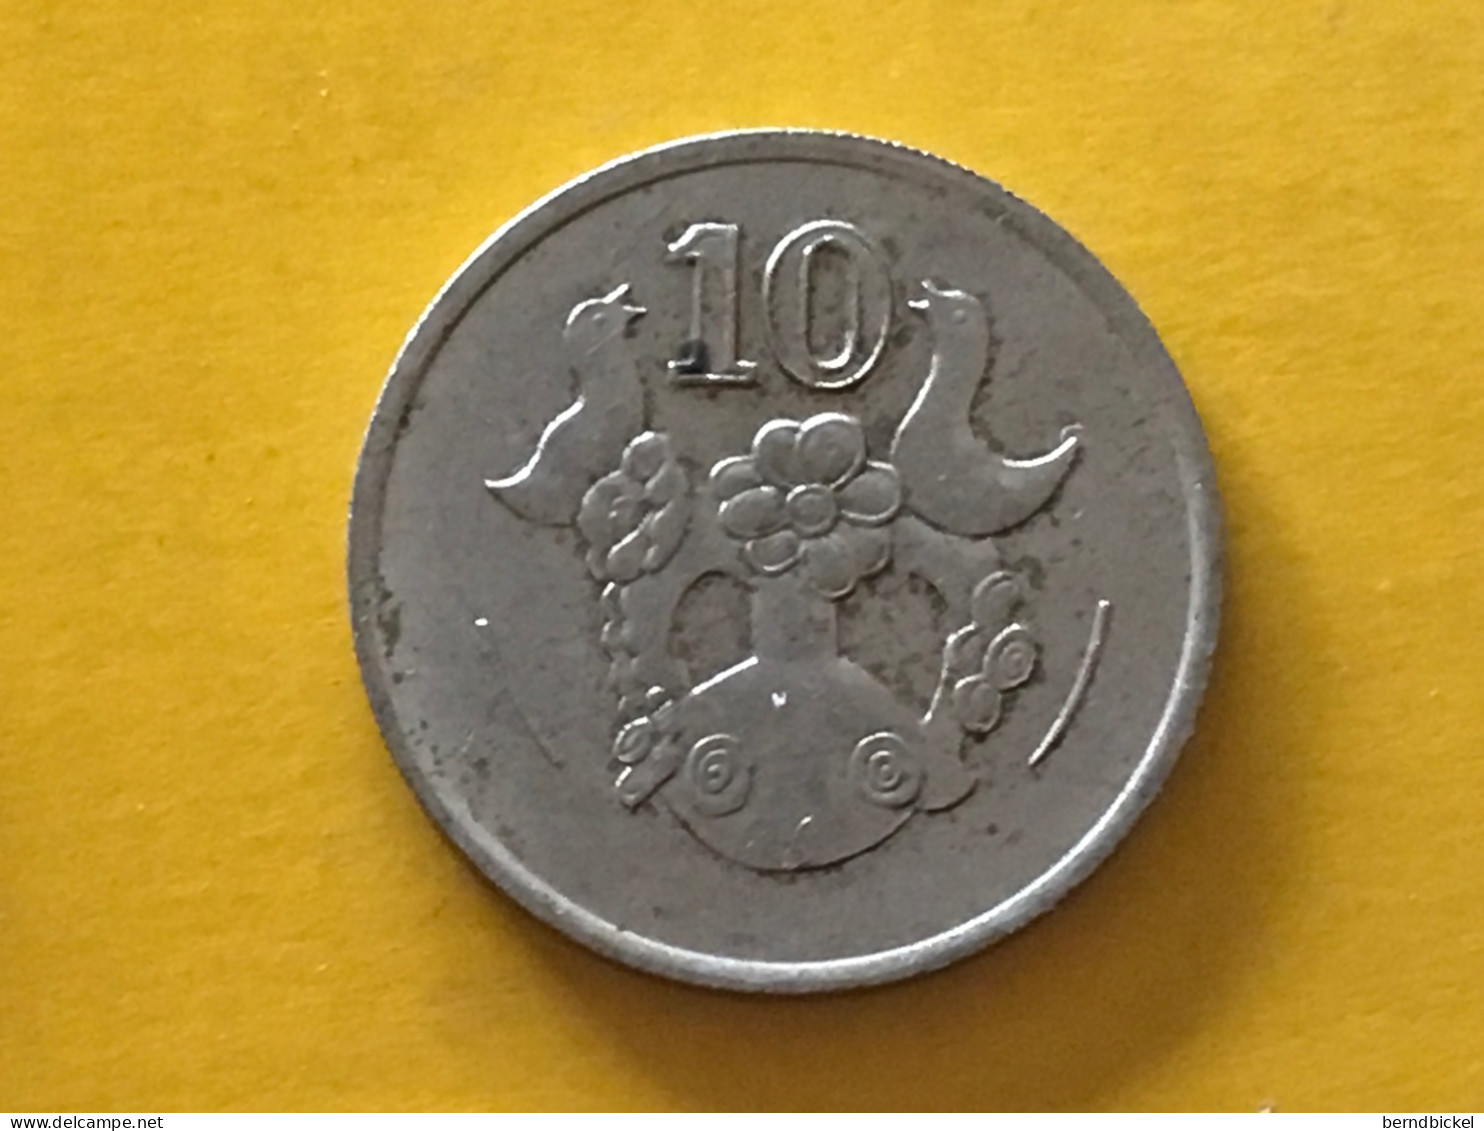 Münze Münzen Umlaufmünze Zypern 10 Cent 1993 - Cyprus